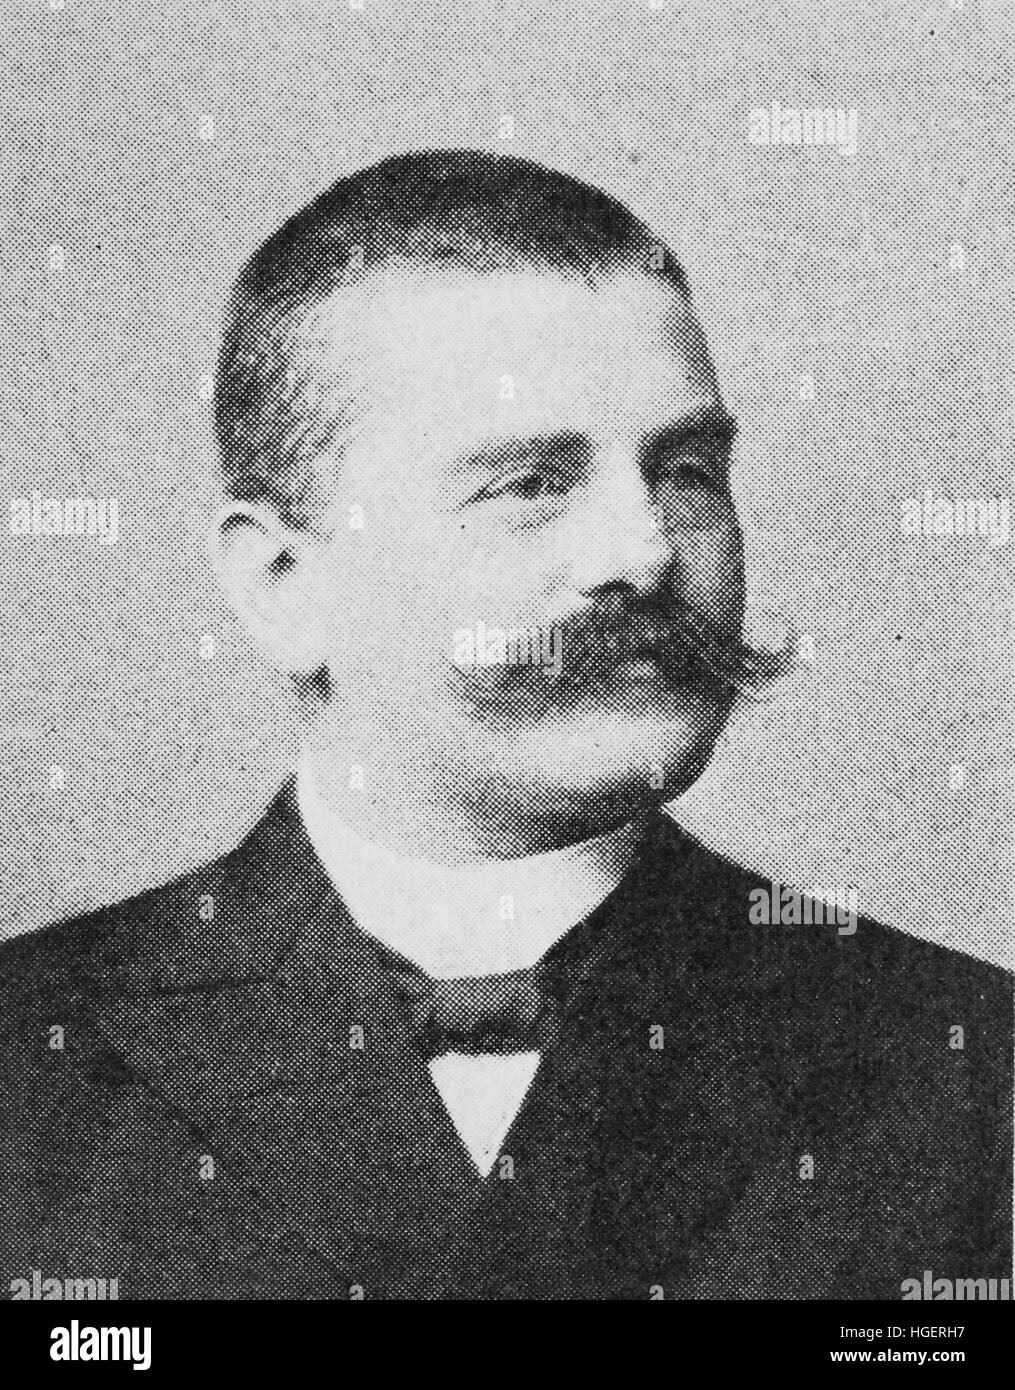 Il barone Detlev von Liliencron nato Friedrich Adolf Axel Detlev Liliencron, 3 giugno 1844 - 22 luglio 1909, era un tedesco lyric poeta e romanziere, riproduzione di una foto a partire dall'anno 1895, digitale migliorata Foto Stock